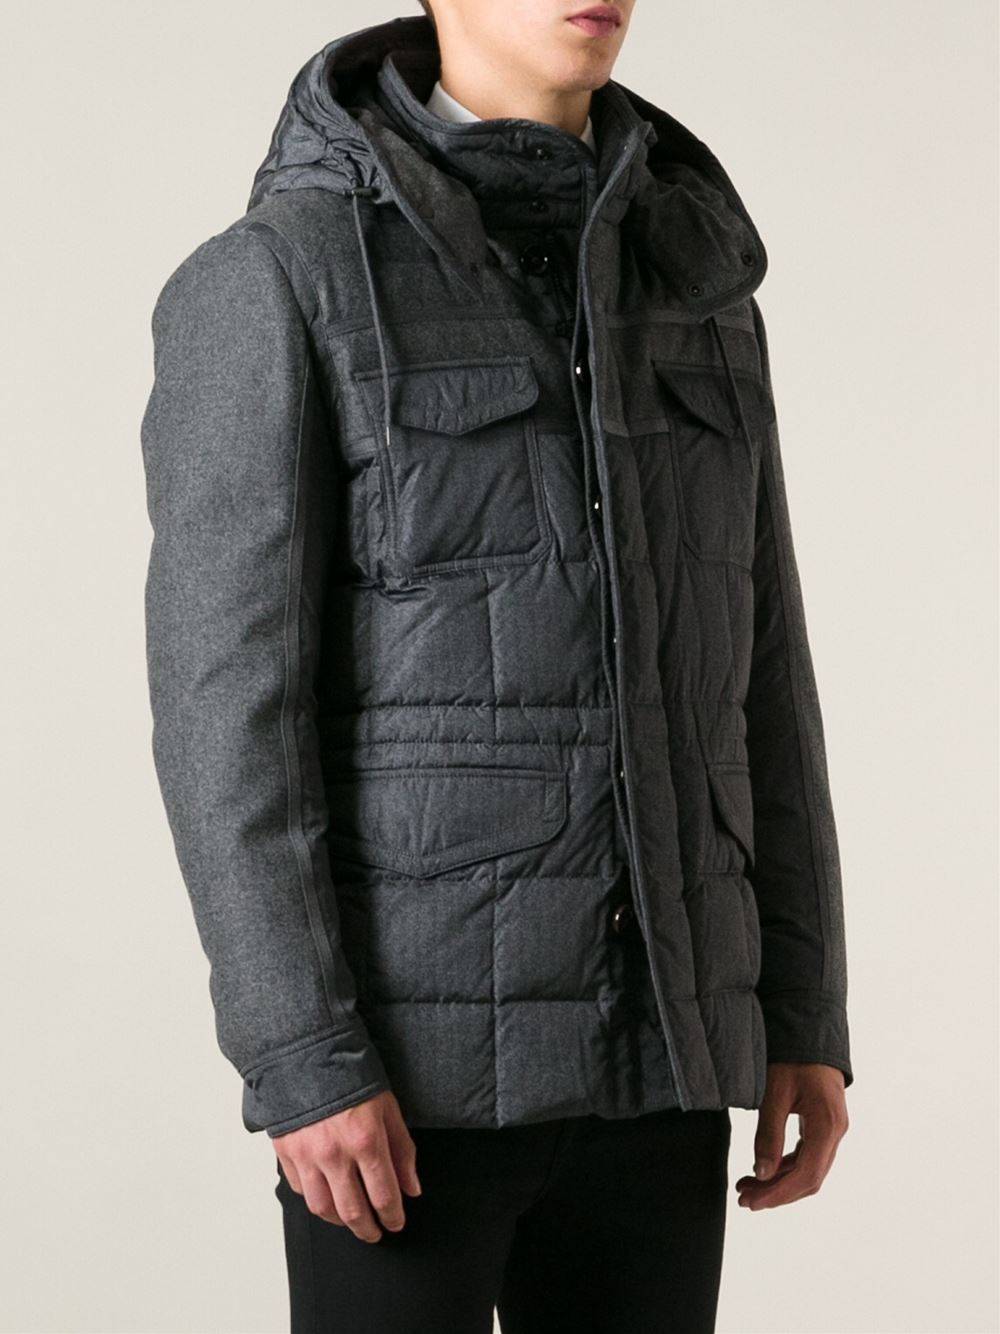 moncler jacket jacob,welcome to buy,www.wgi.ooo